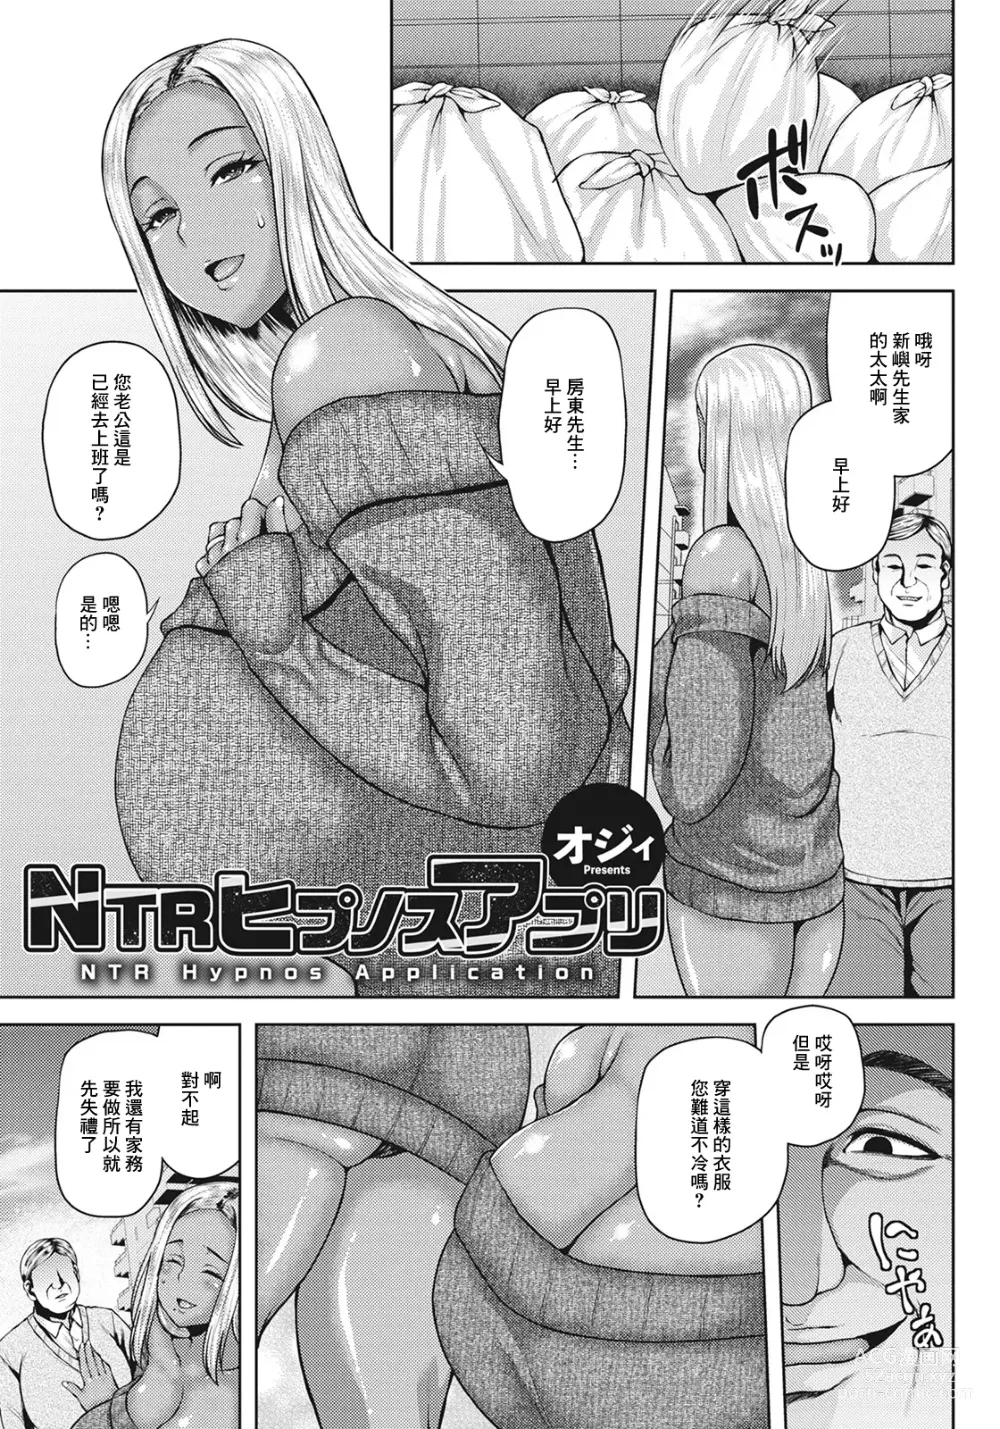 Page 1 of manga NTR Hypnosis Appli